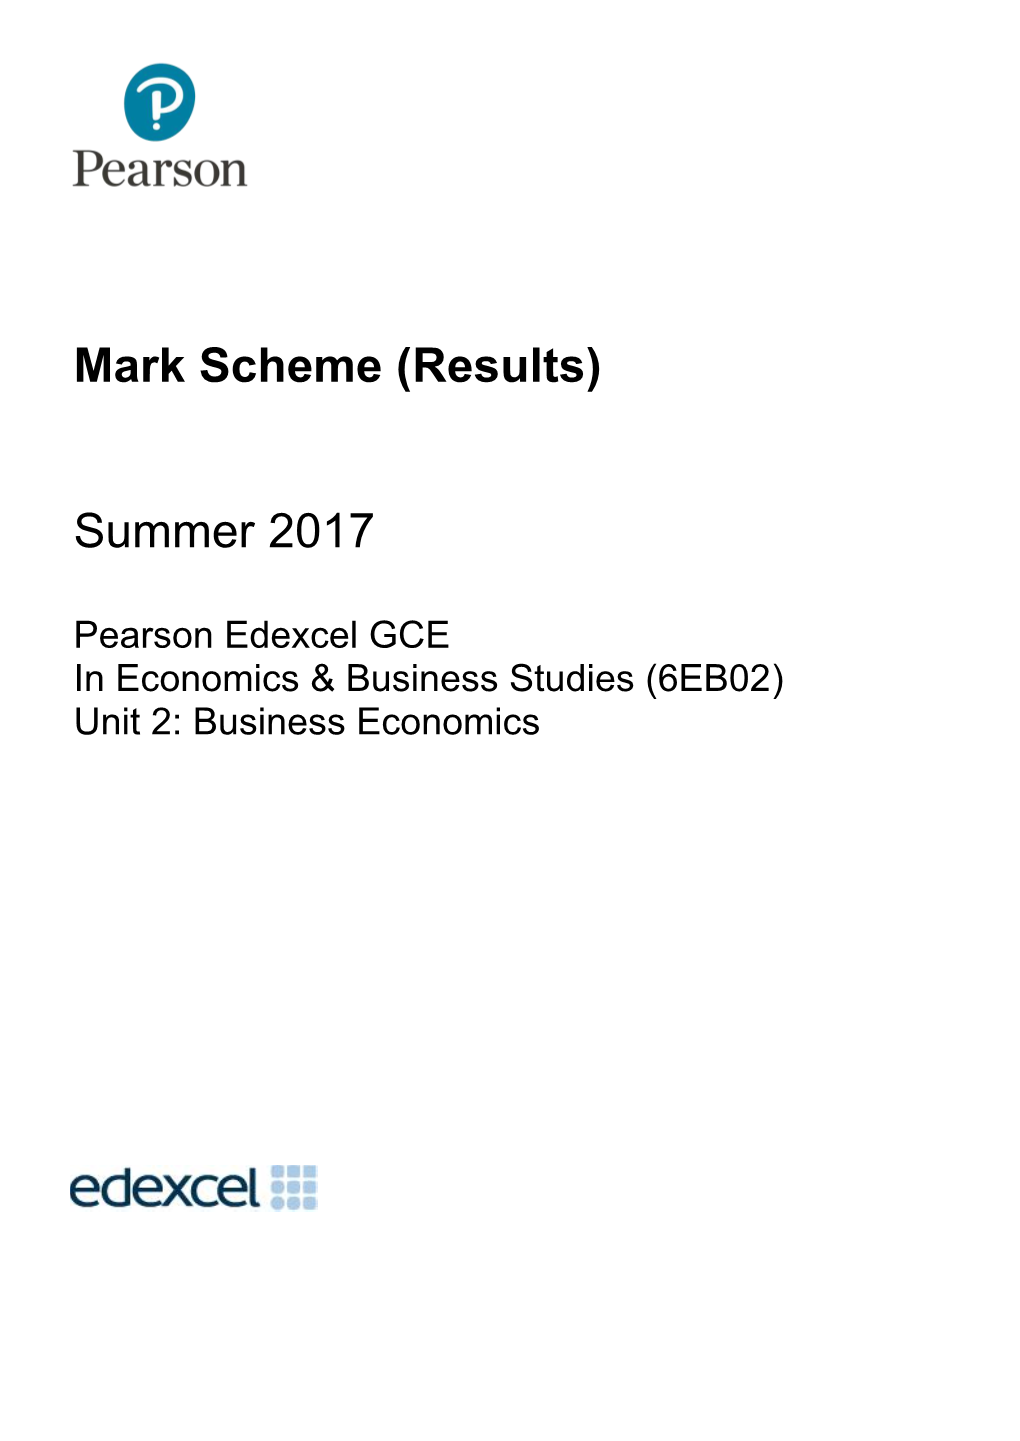 Mark Scheme (Results) Summer 2017